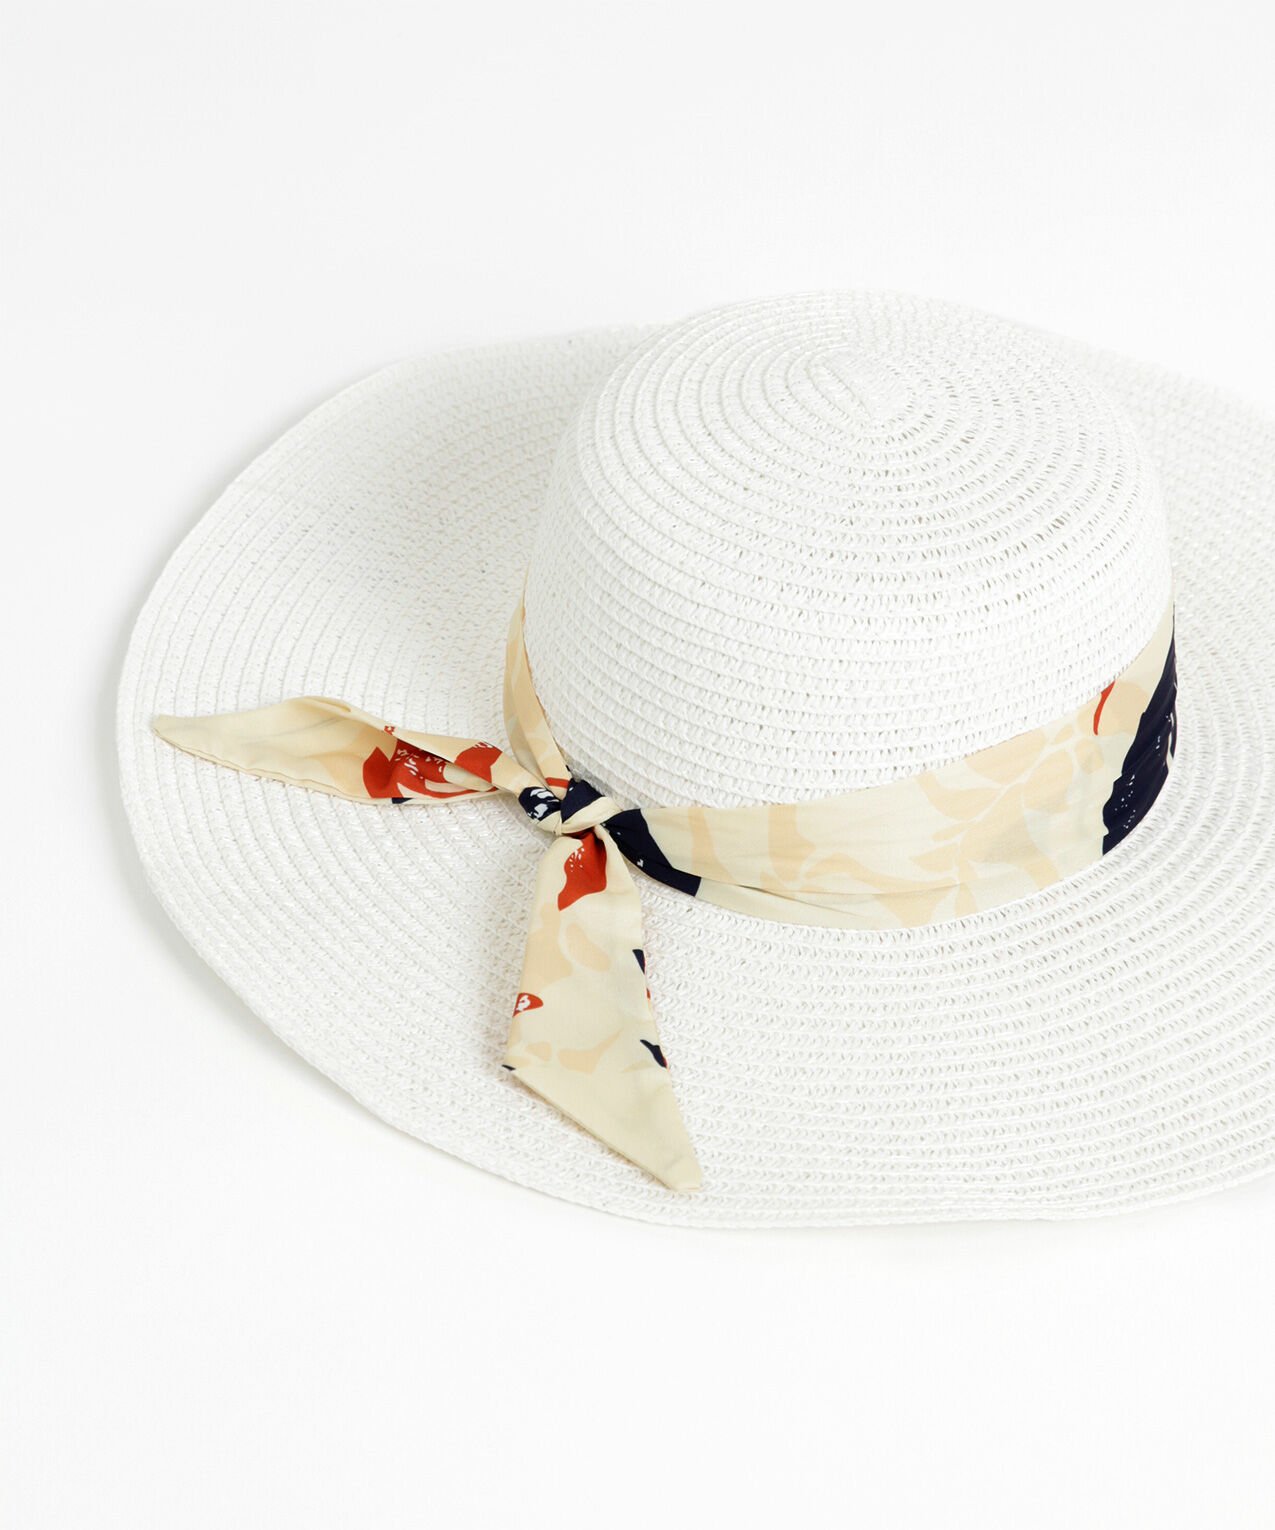 Wide-Brim Straw Hat with Sash